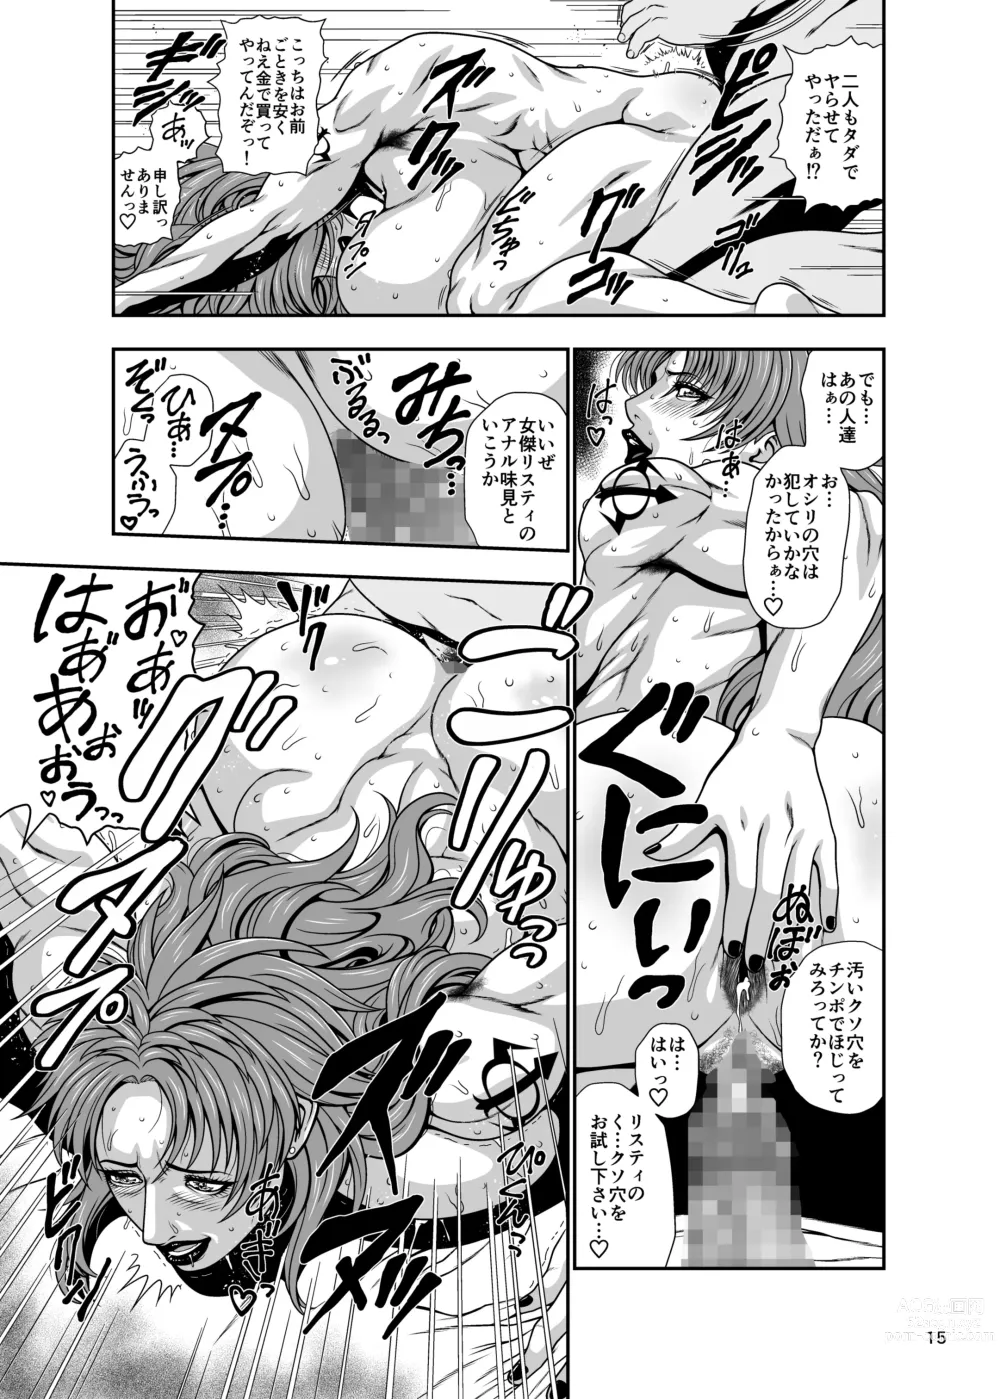 Page 15 of doujinshi Kouya no Gizoku no Zenra Houmon Service